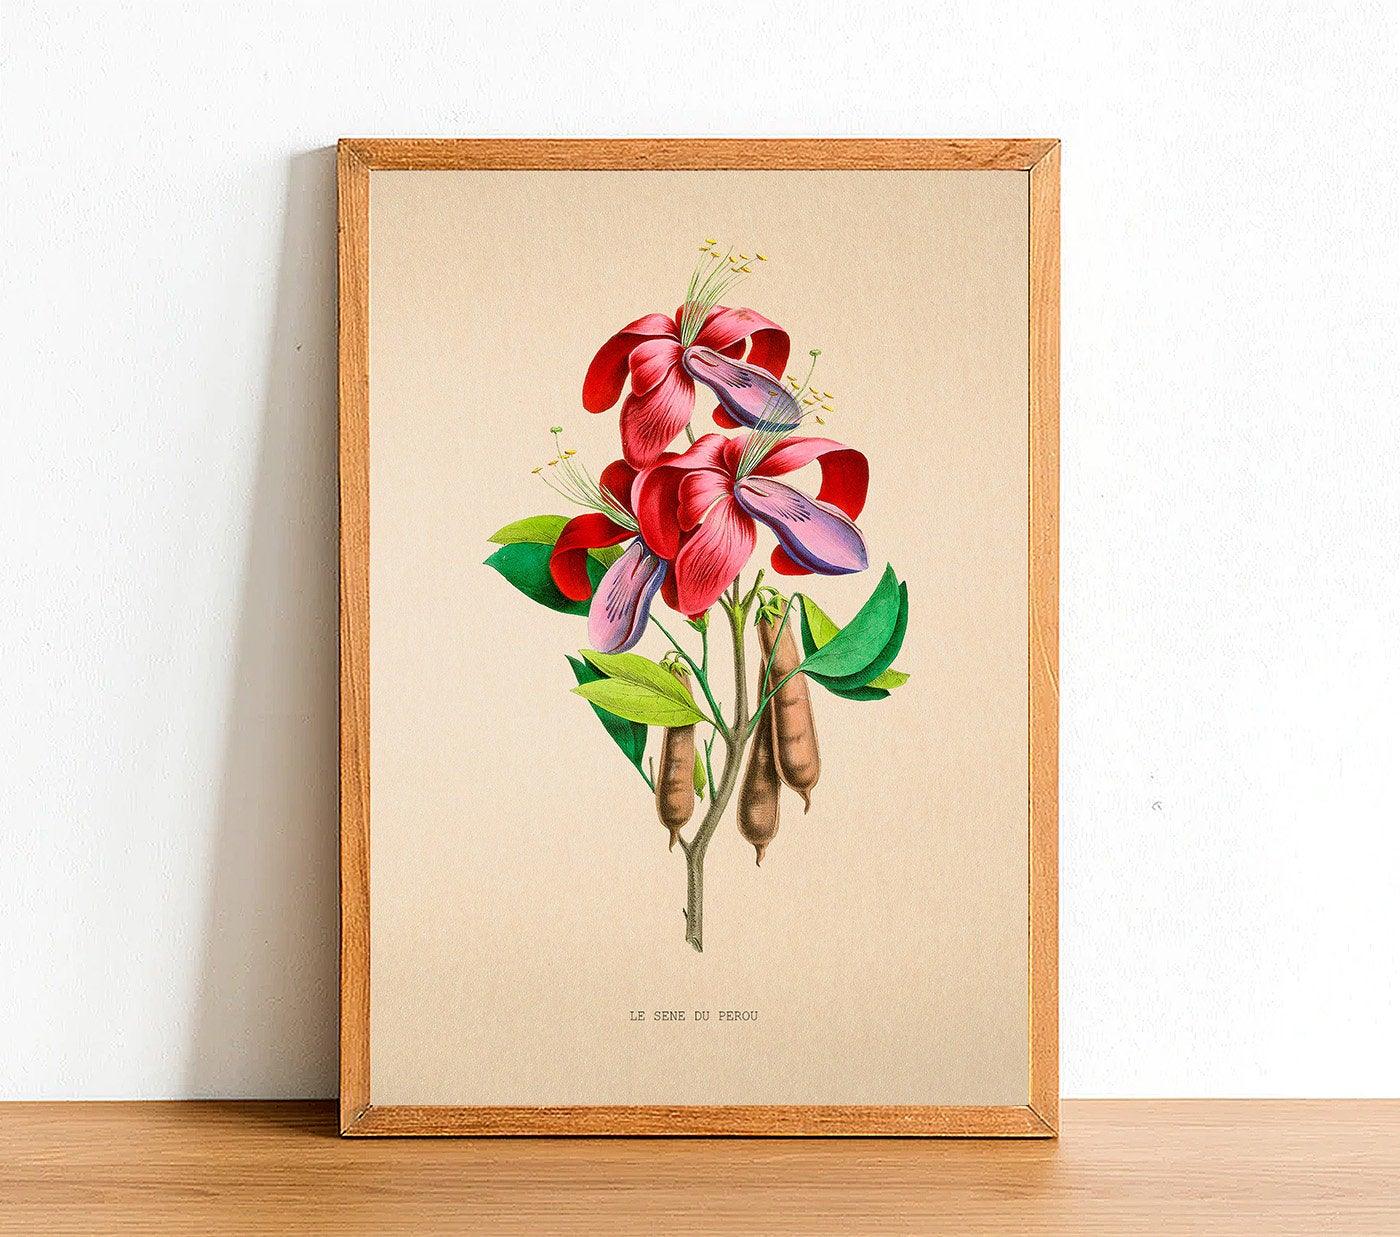 Le Sene du Perou - Vintage Flower Poster - Classic Posters